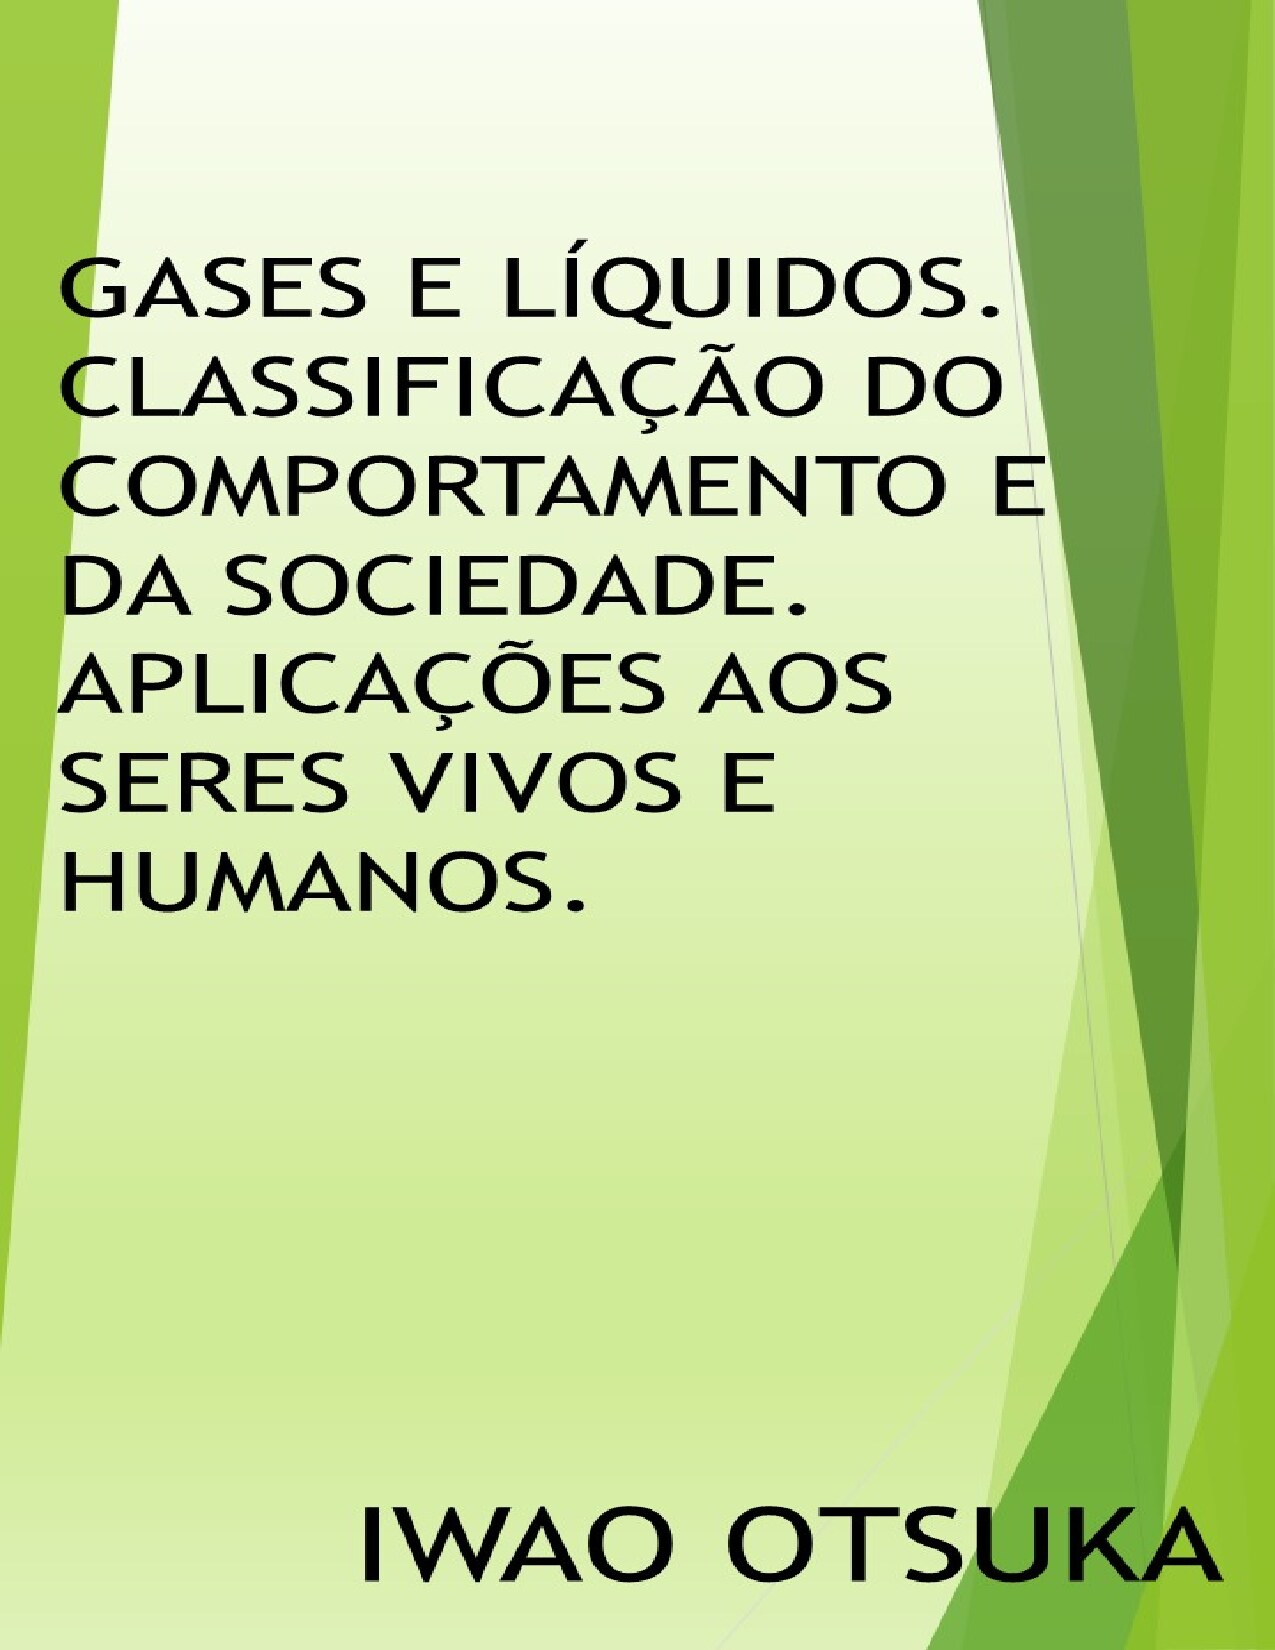 Gases e líquidos. Classificação do comportamento e da sociedade. Aplicações aos seres vivos e humanos.